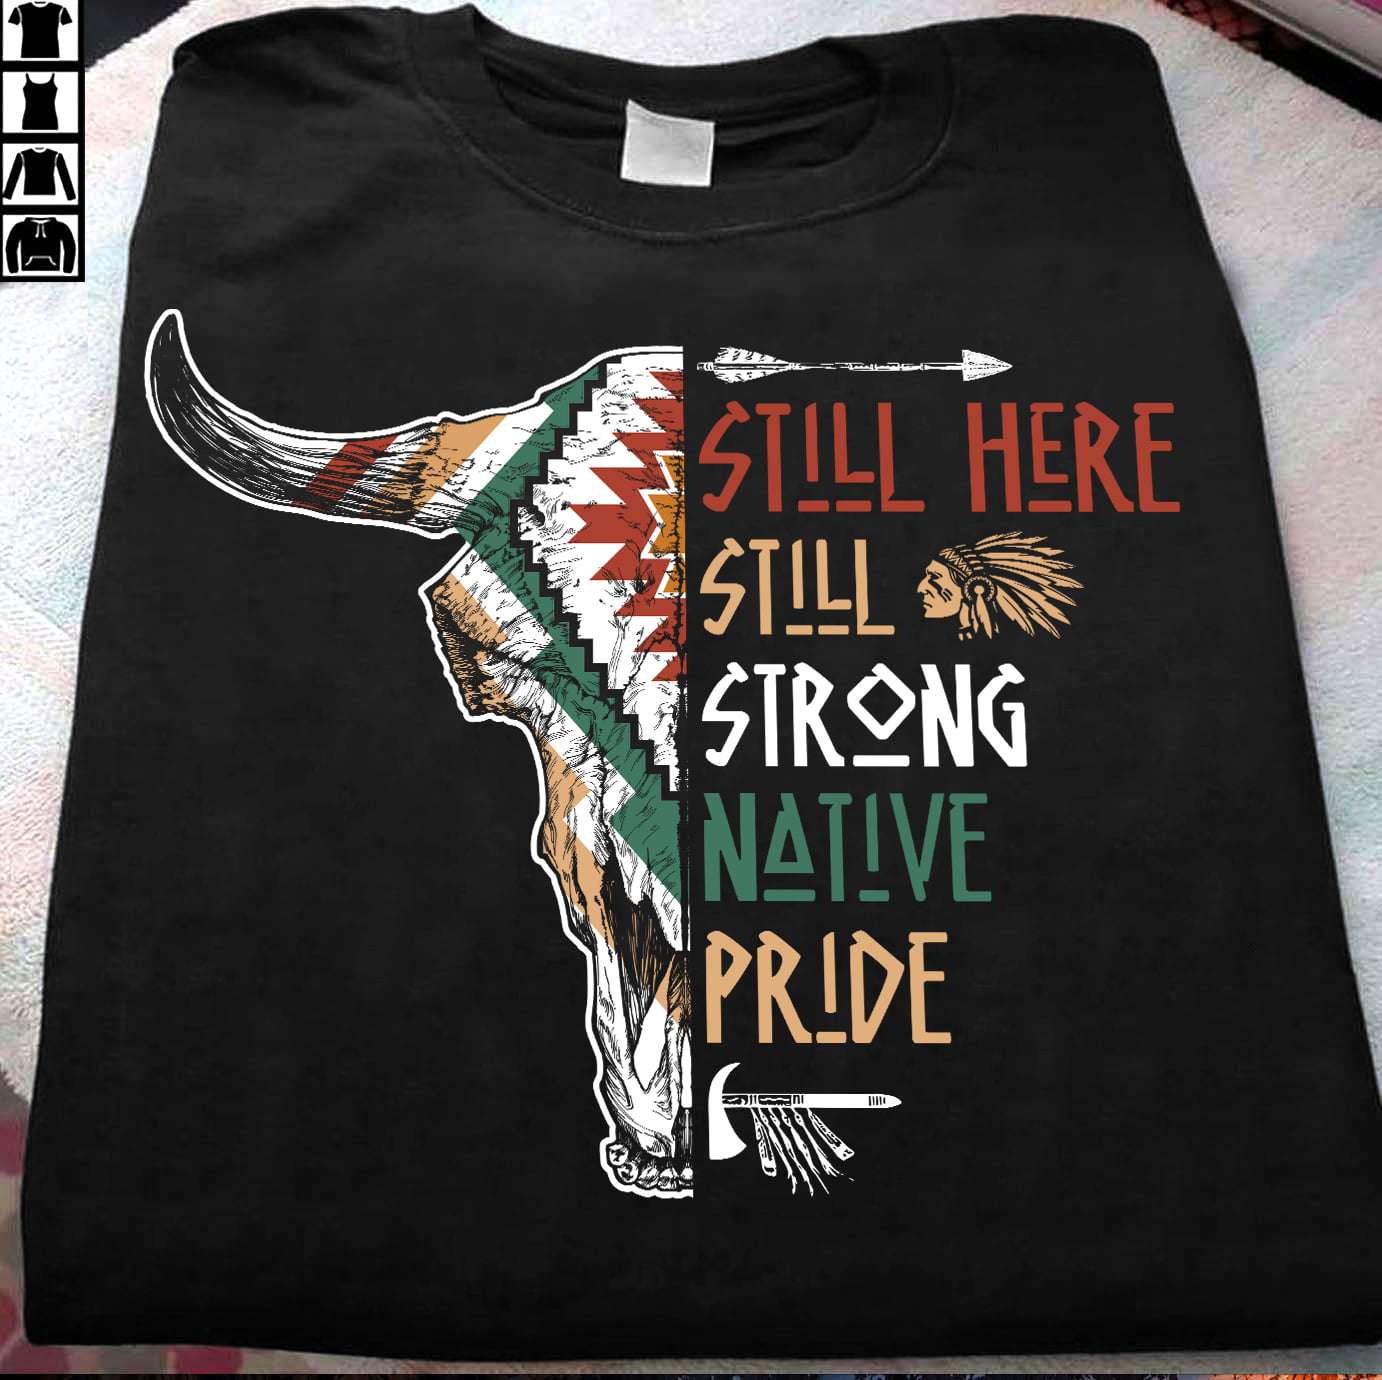 Still here, still strong native pride - Native American pride